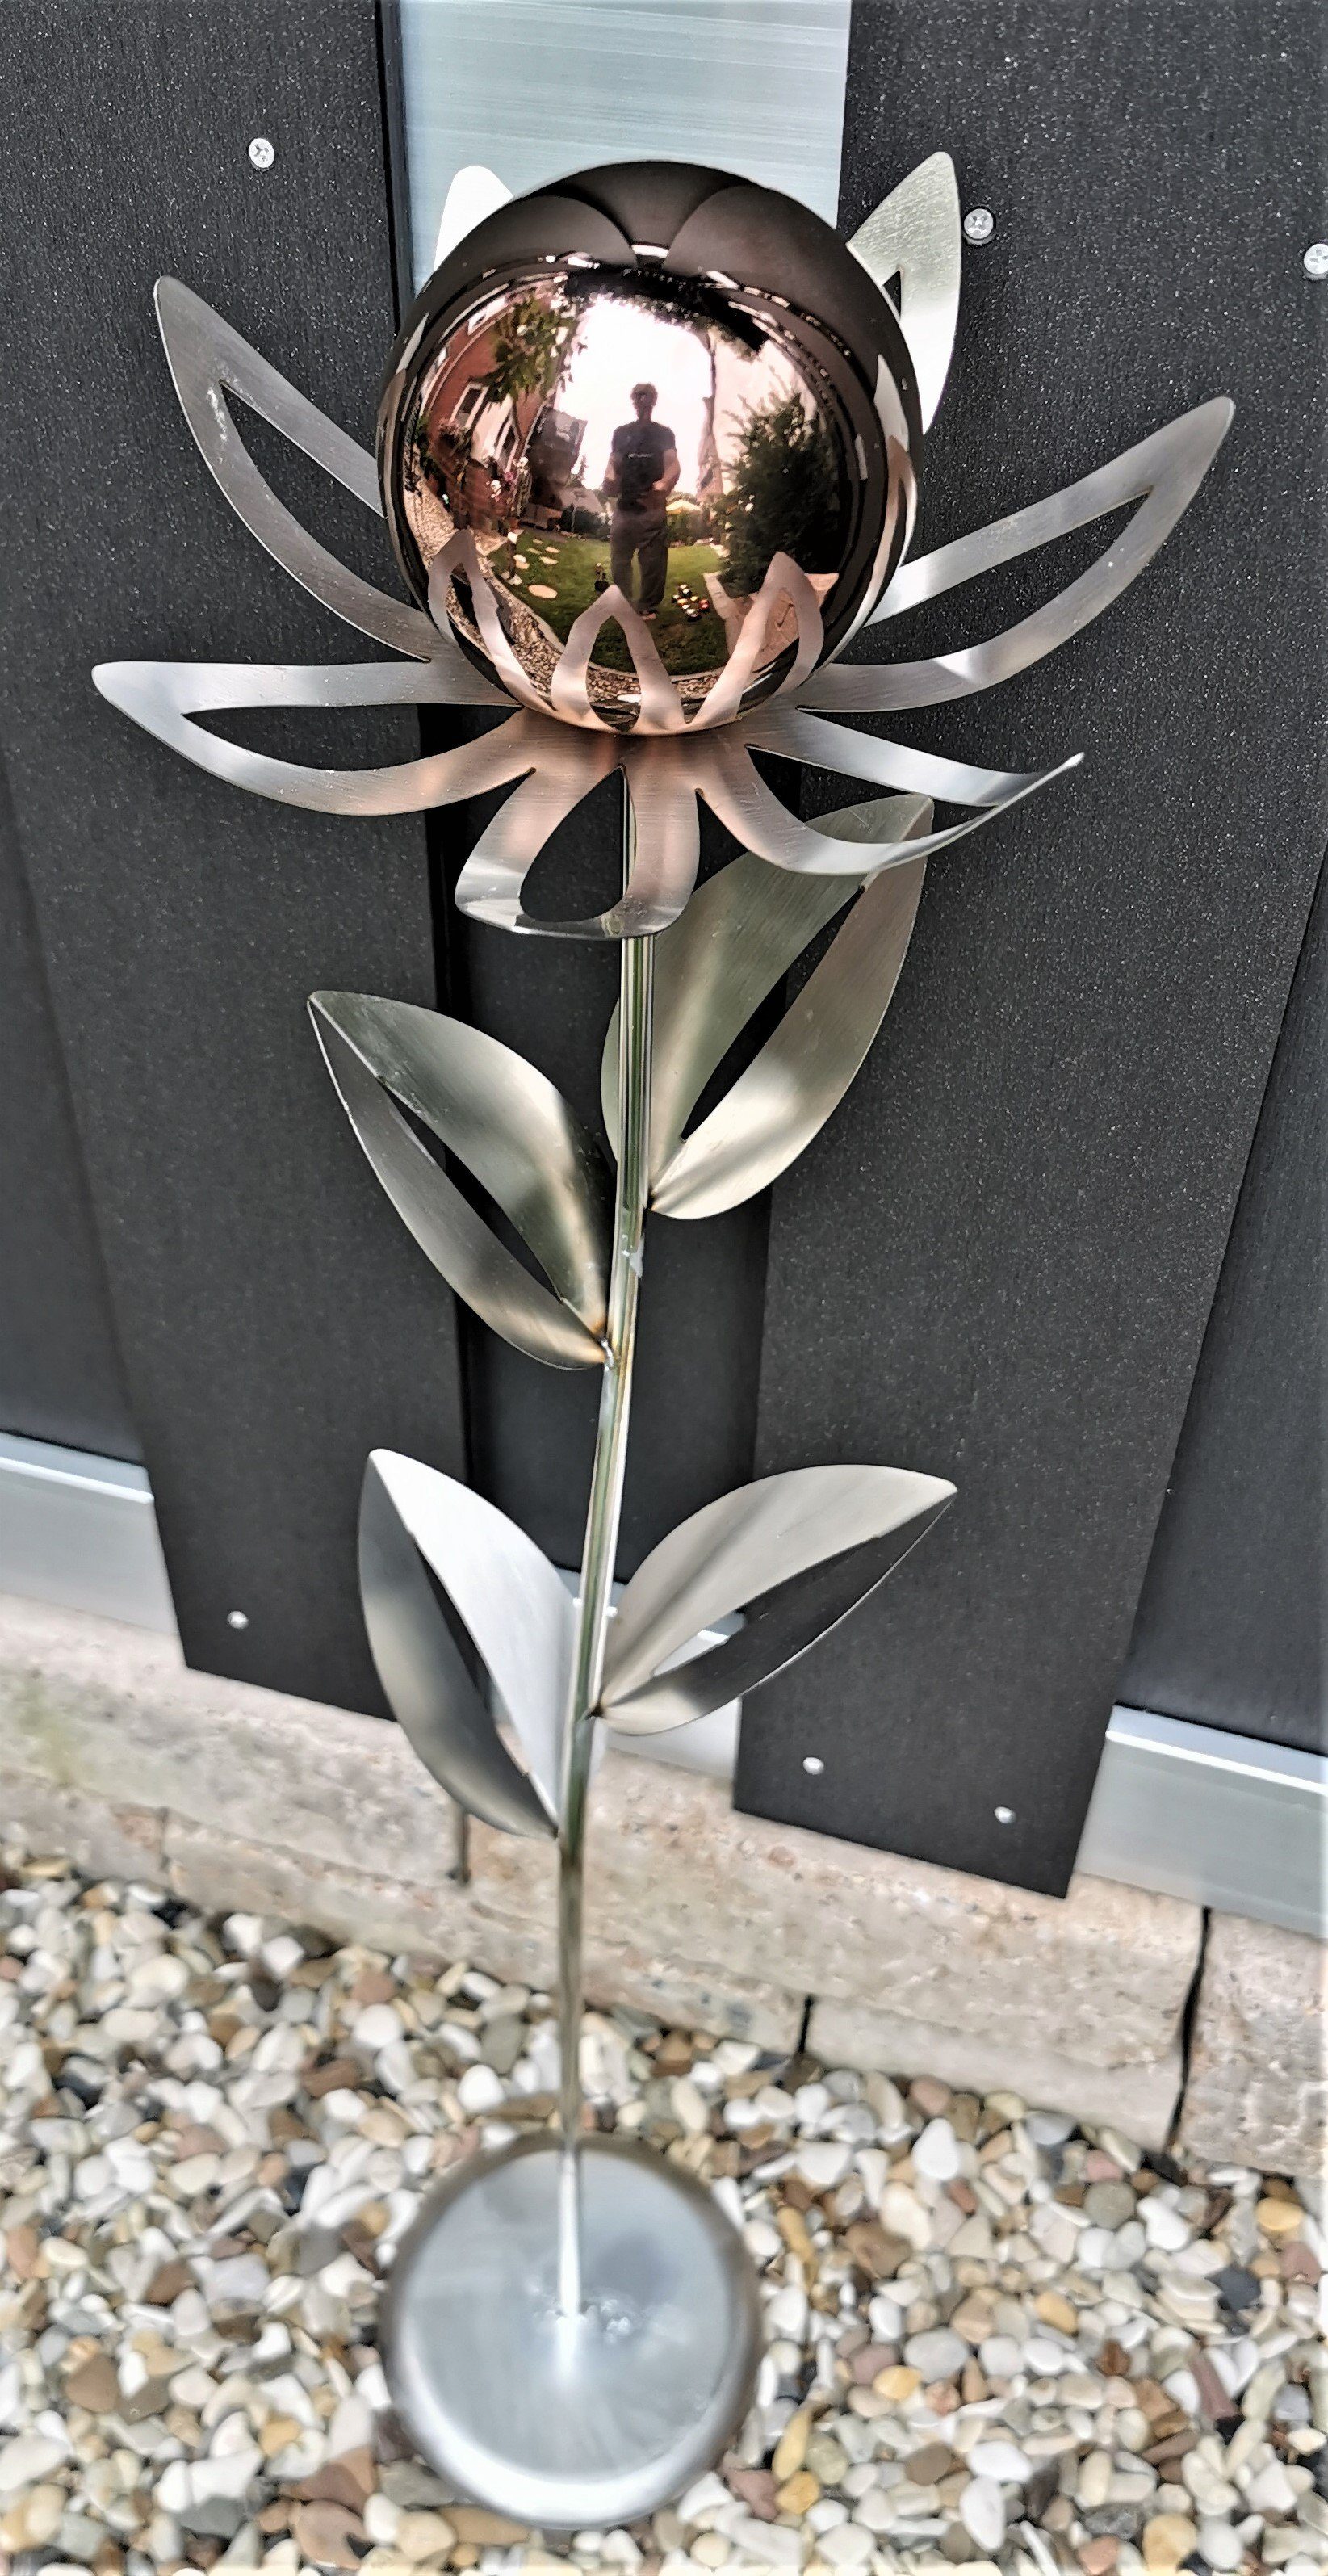 77 Bocker Blume matt Jürgen und Garten-Ambiente Skulptur Kugel golden Paris rose Edelstahl Gartenstecker Standfuß mit cm